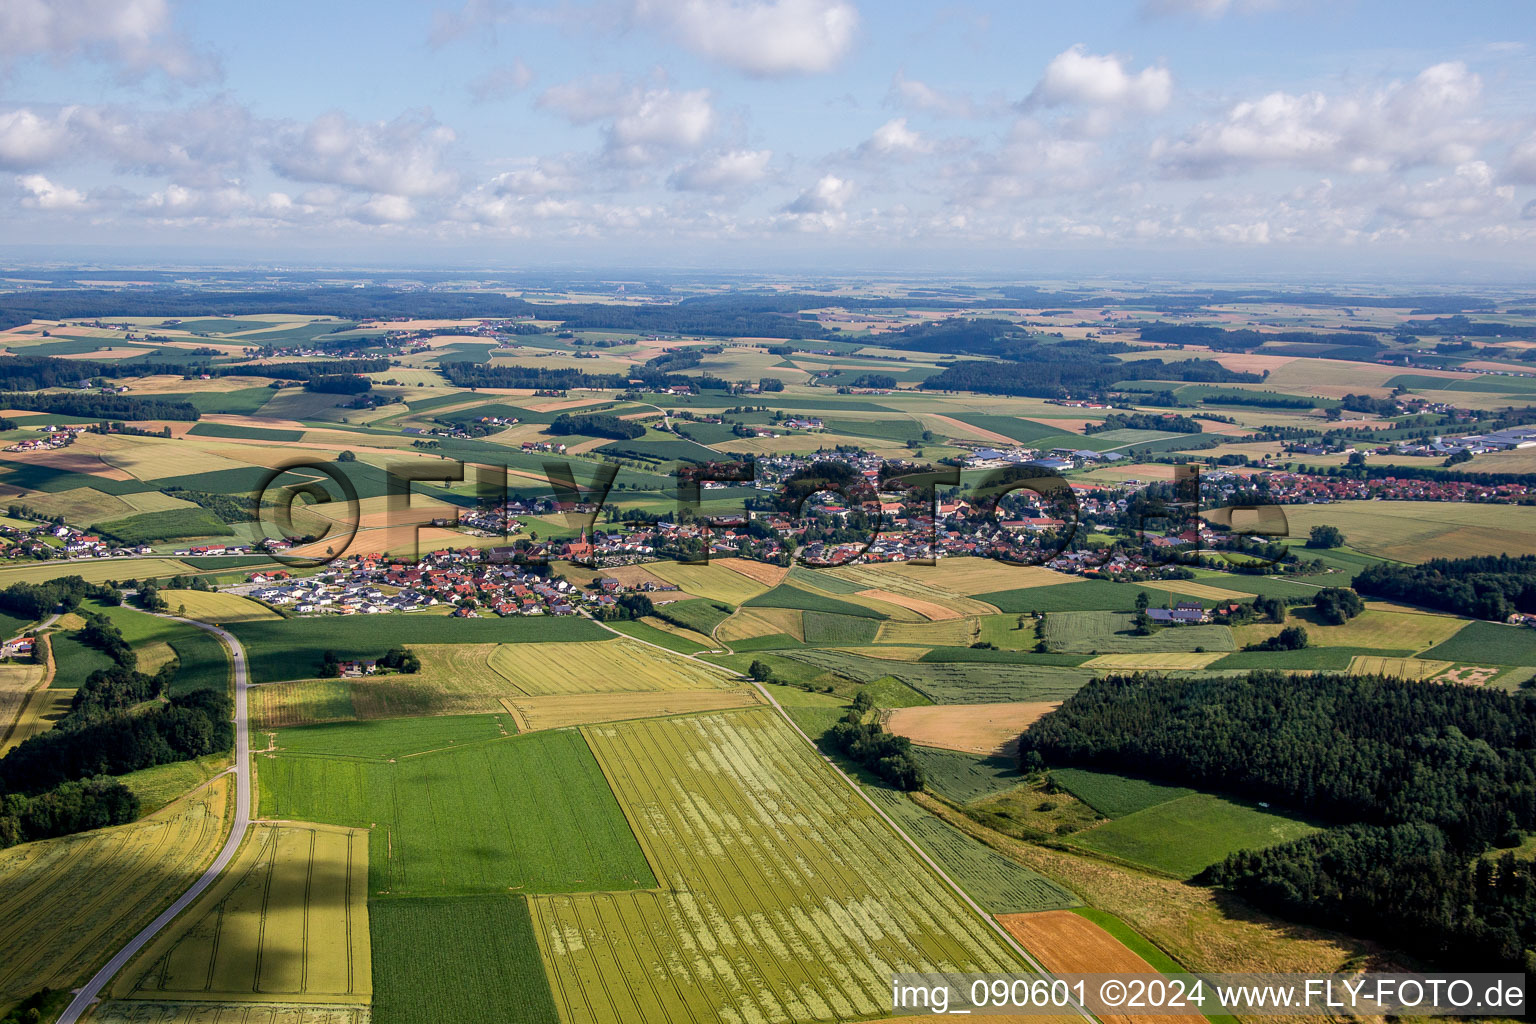 Luftbild von Dorf - Ansicht am Rande von landwirtschaftlichen Feldern und Nutzflächen in Mengkofen im Bundesland Bayern, Deutschland